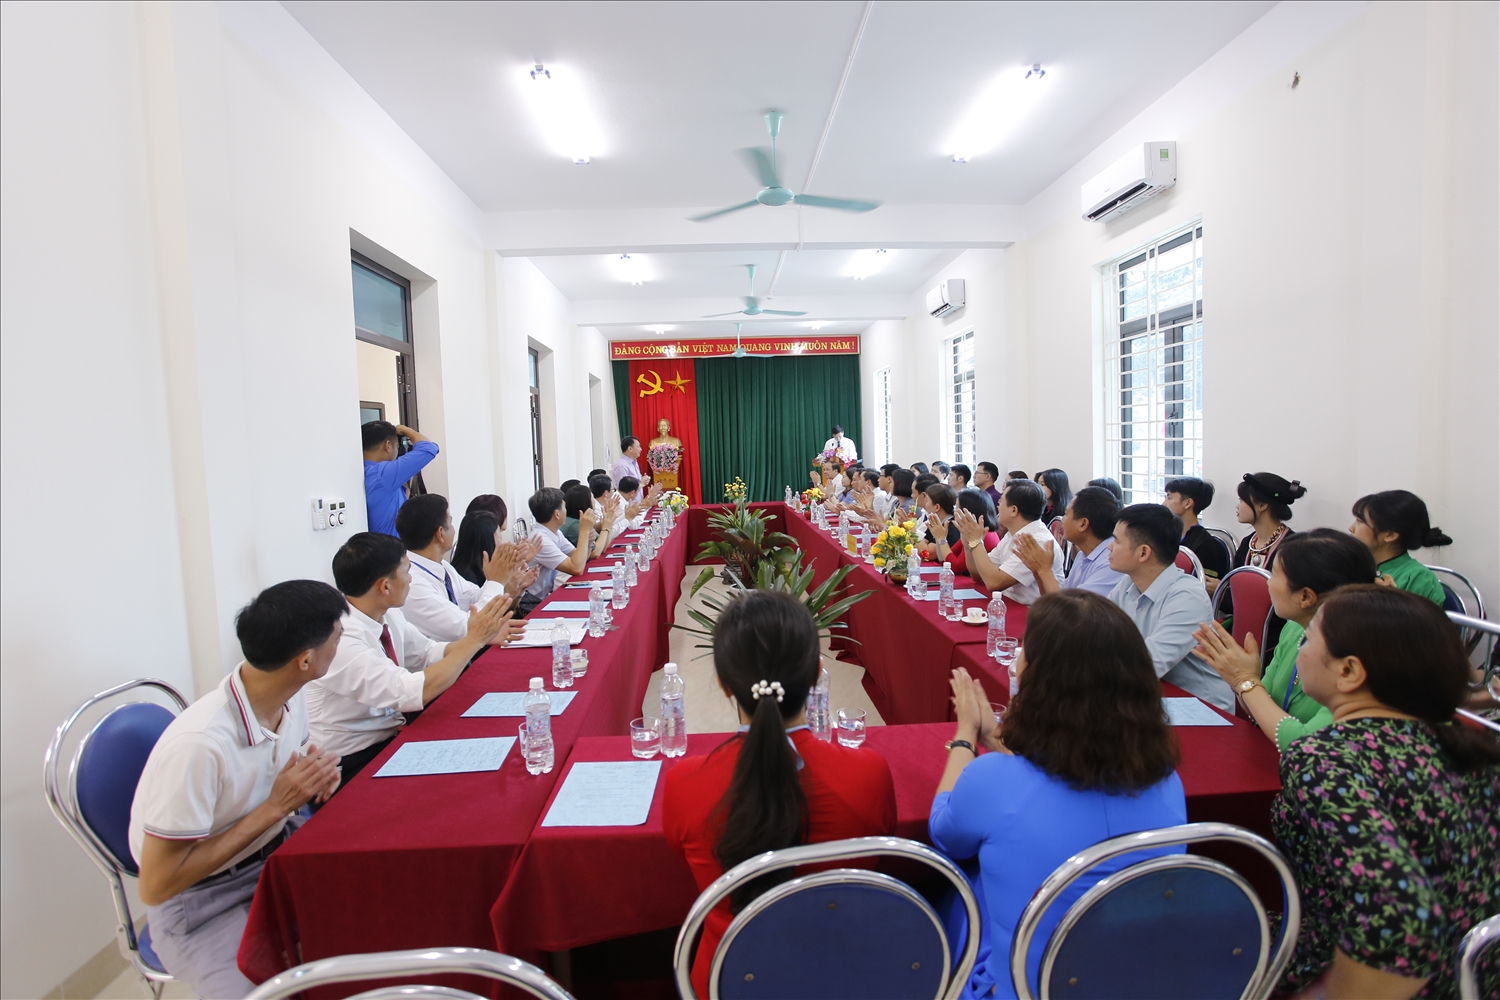 Quang cảnh buổi làm việc của đoàn công tác tại trường THPT Văn Chấn - Yên Bái